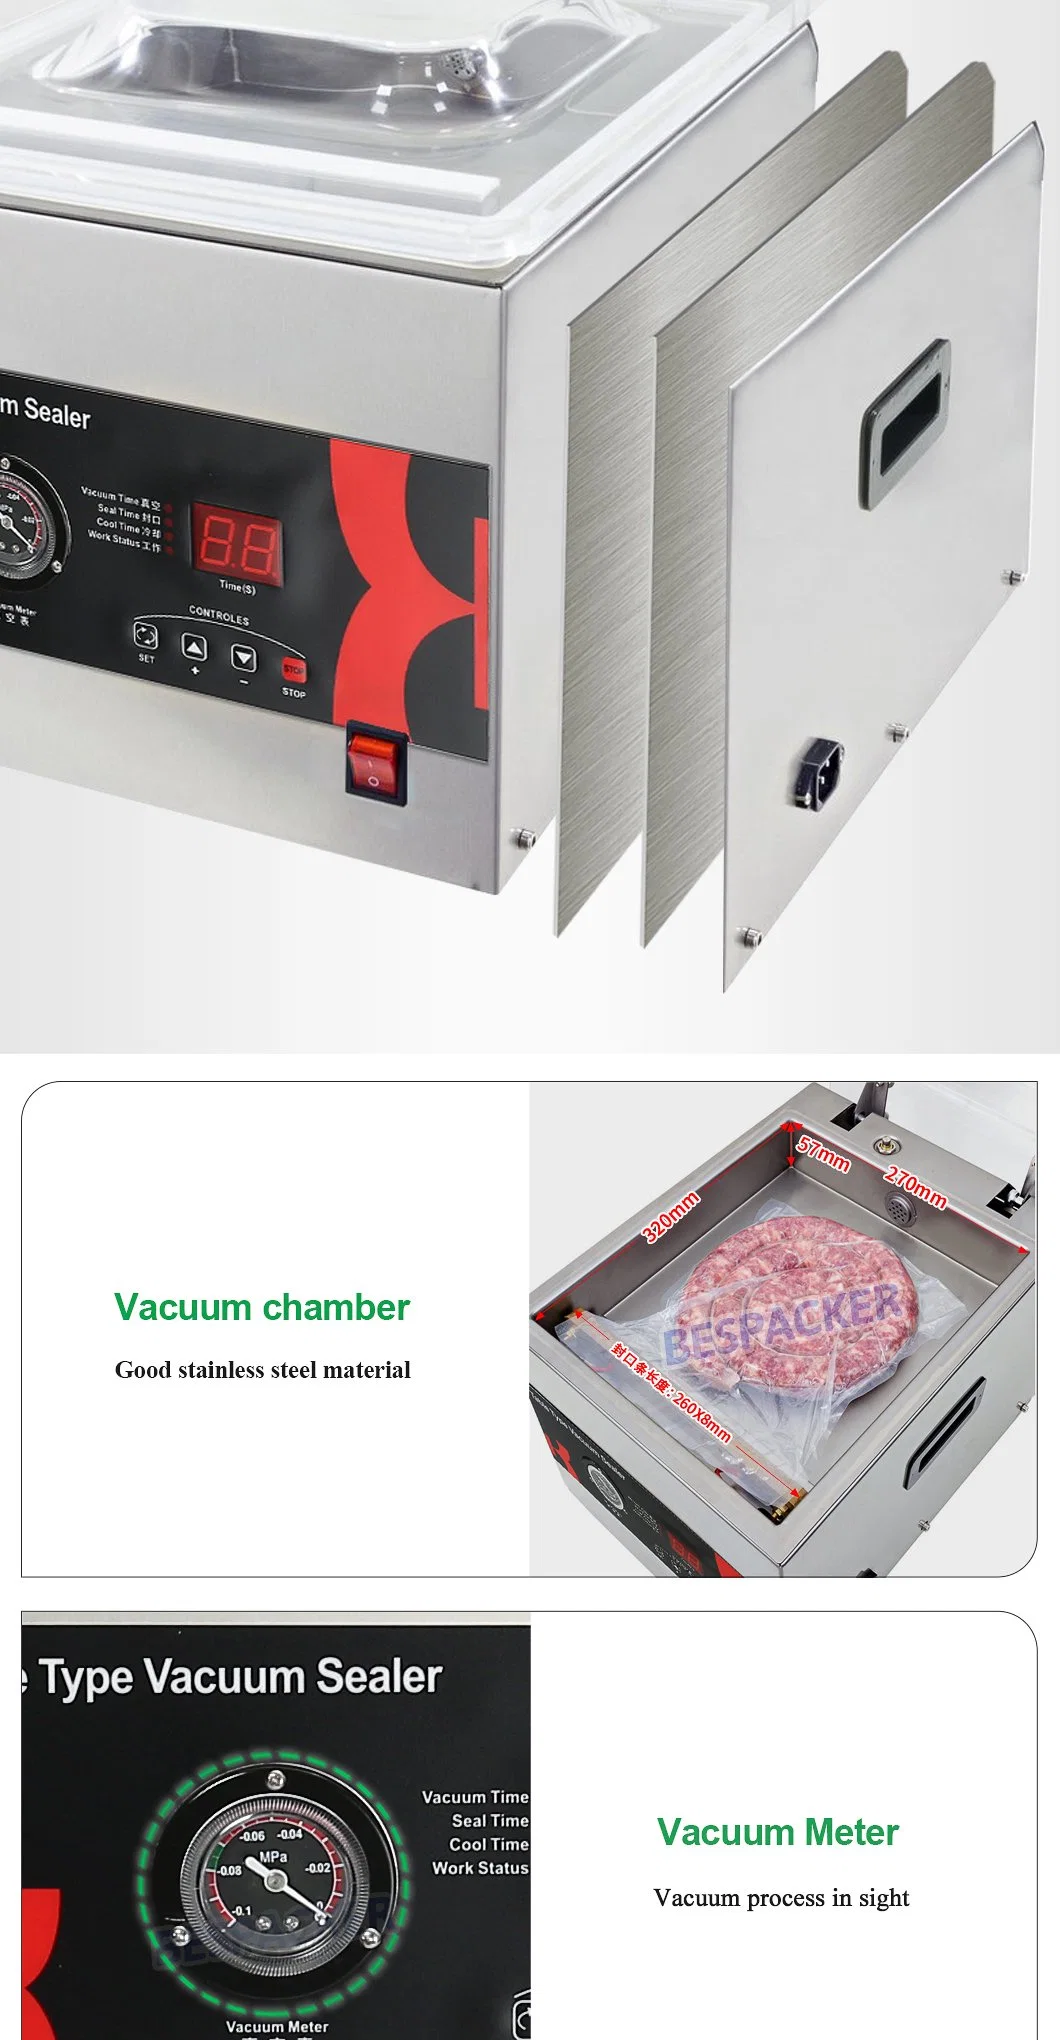 stand type double sealing bar high efficiency vacuum packaging machine vacuum sealer